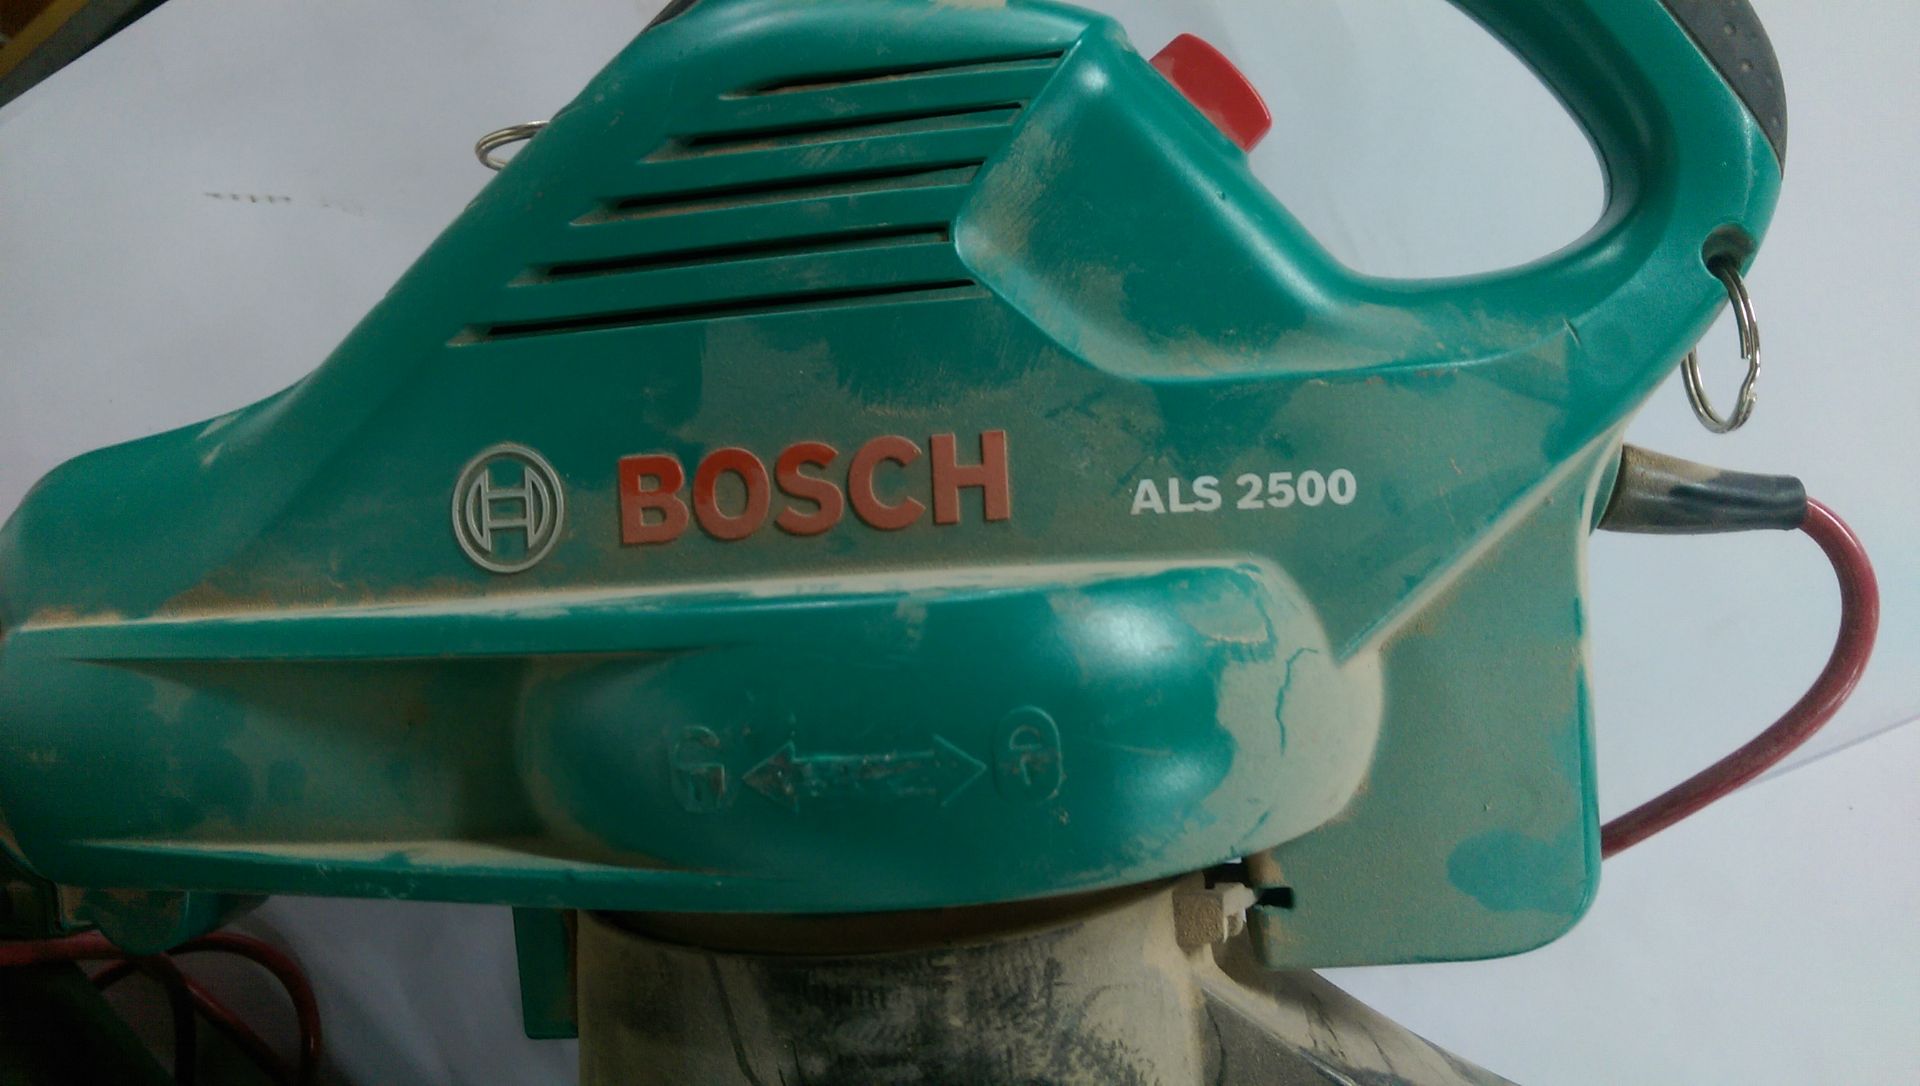 Bosch ALS 2500 Electric Garden Blower and Vacuum - Bild 2 aus 2